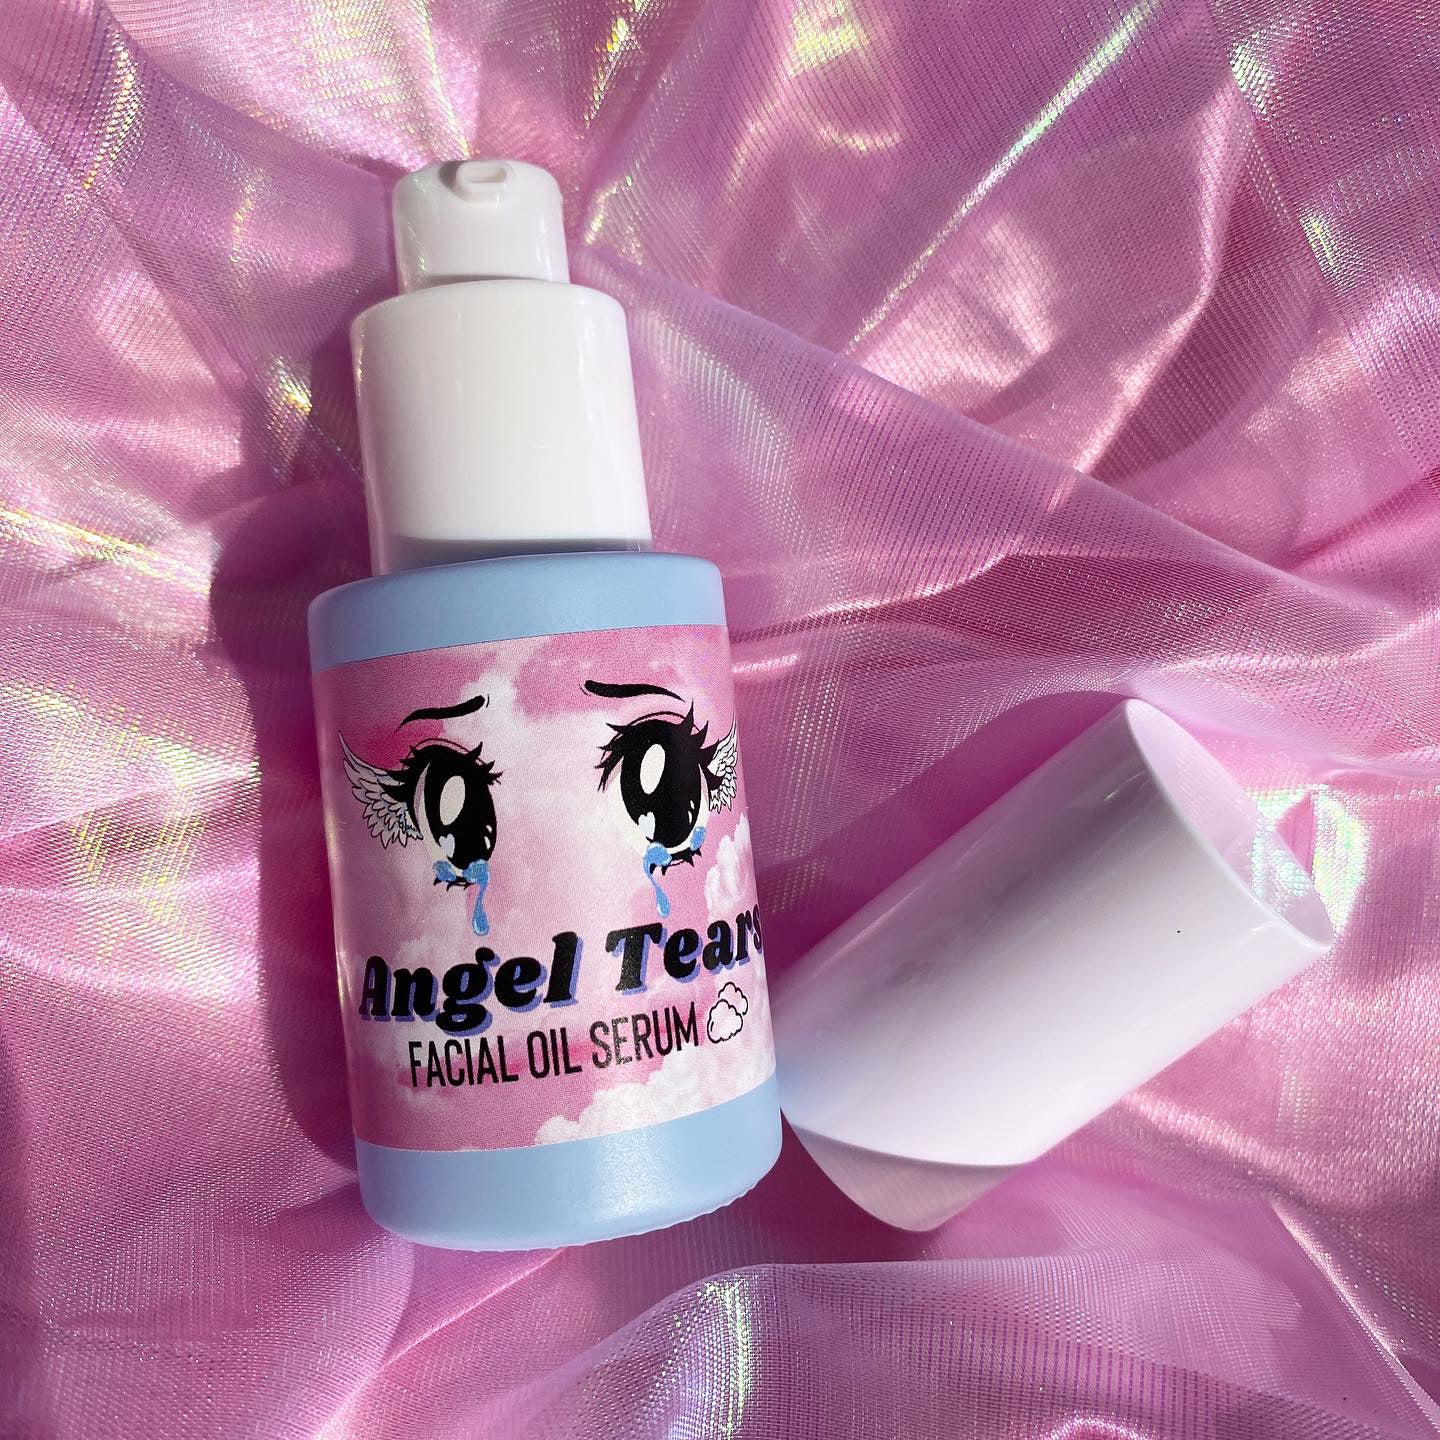 Angel Tears Facial Oil Serum